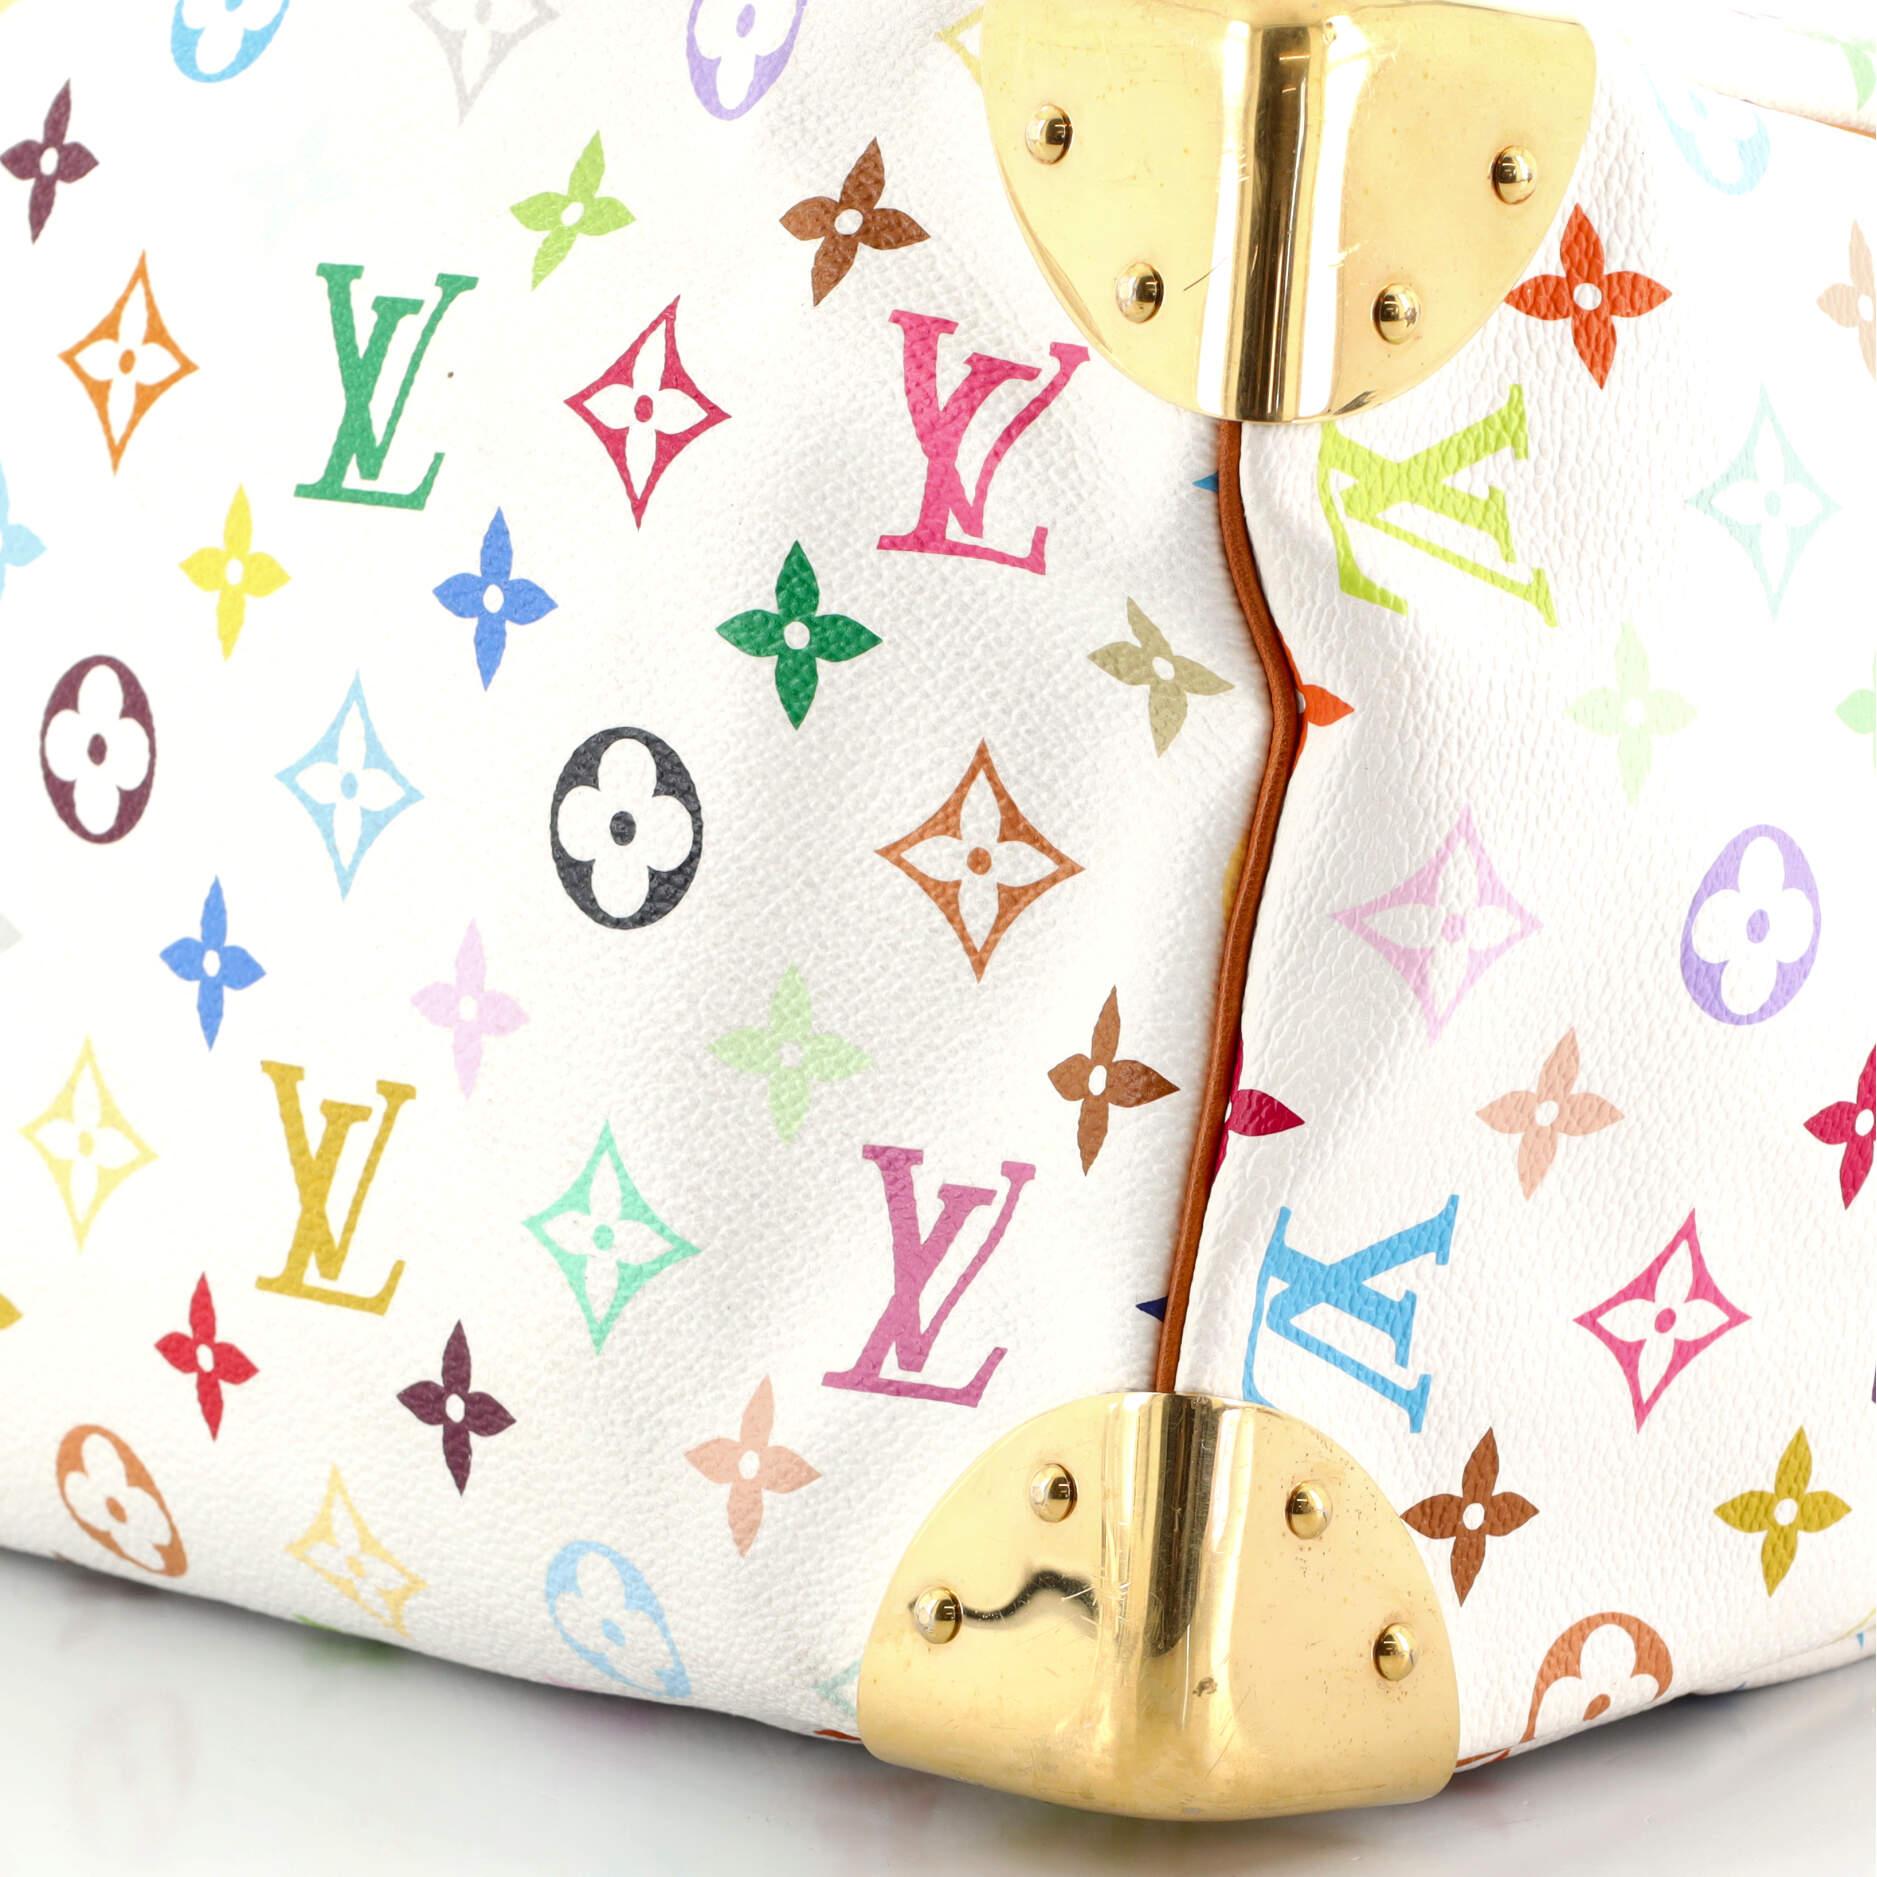 Louis Vuitton Speedy Handbag Monogram Multicolor 30 1